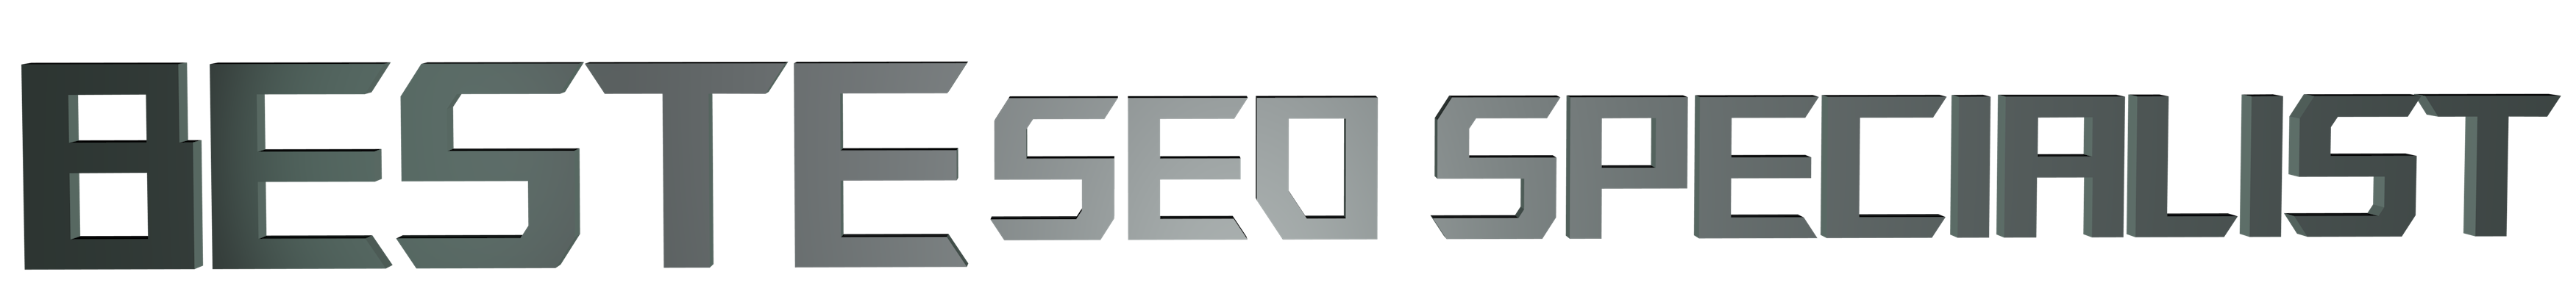 logo-beste-seo-specialist-nederland